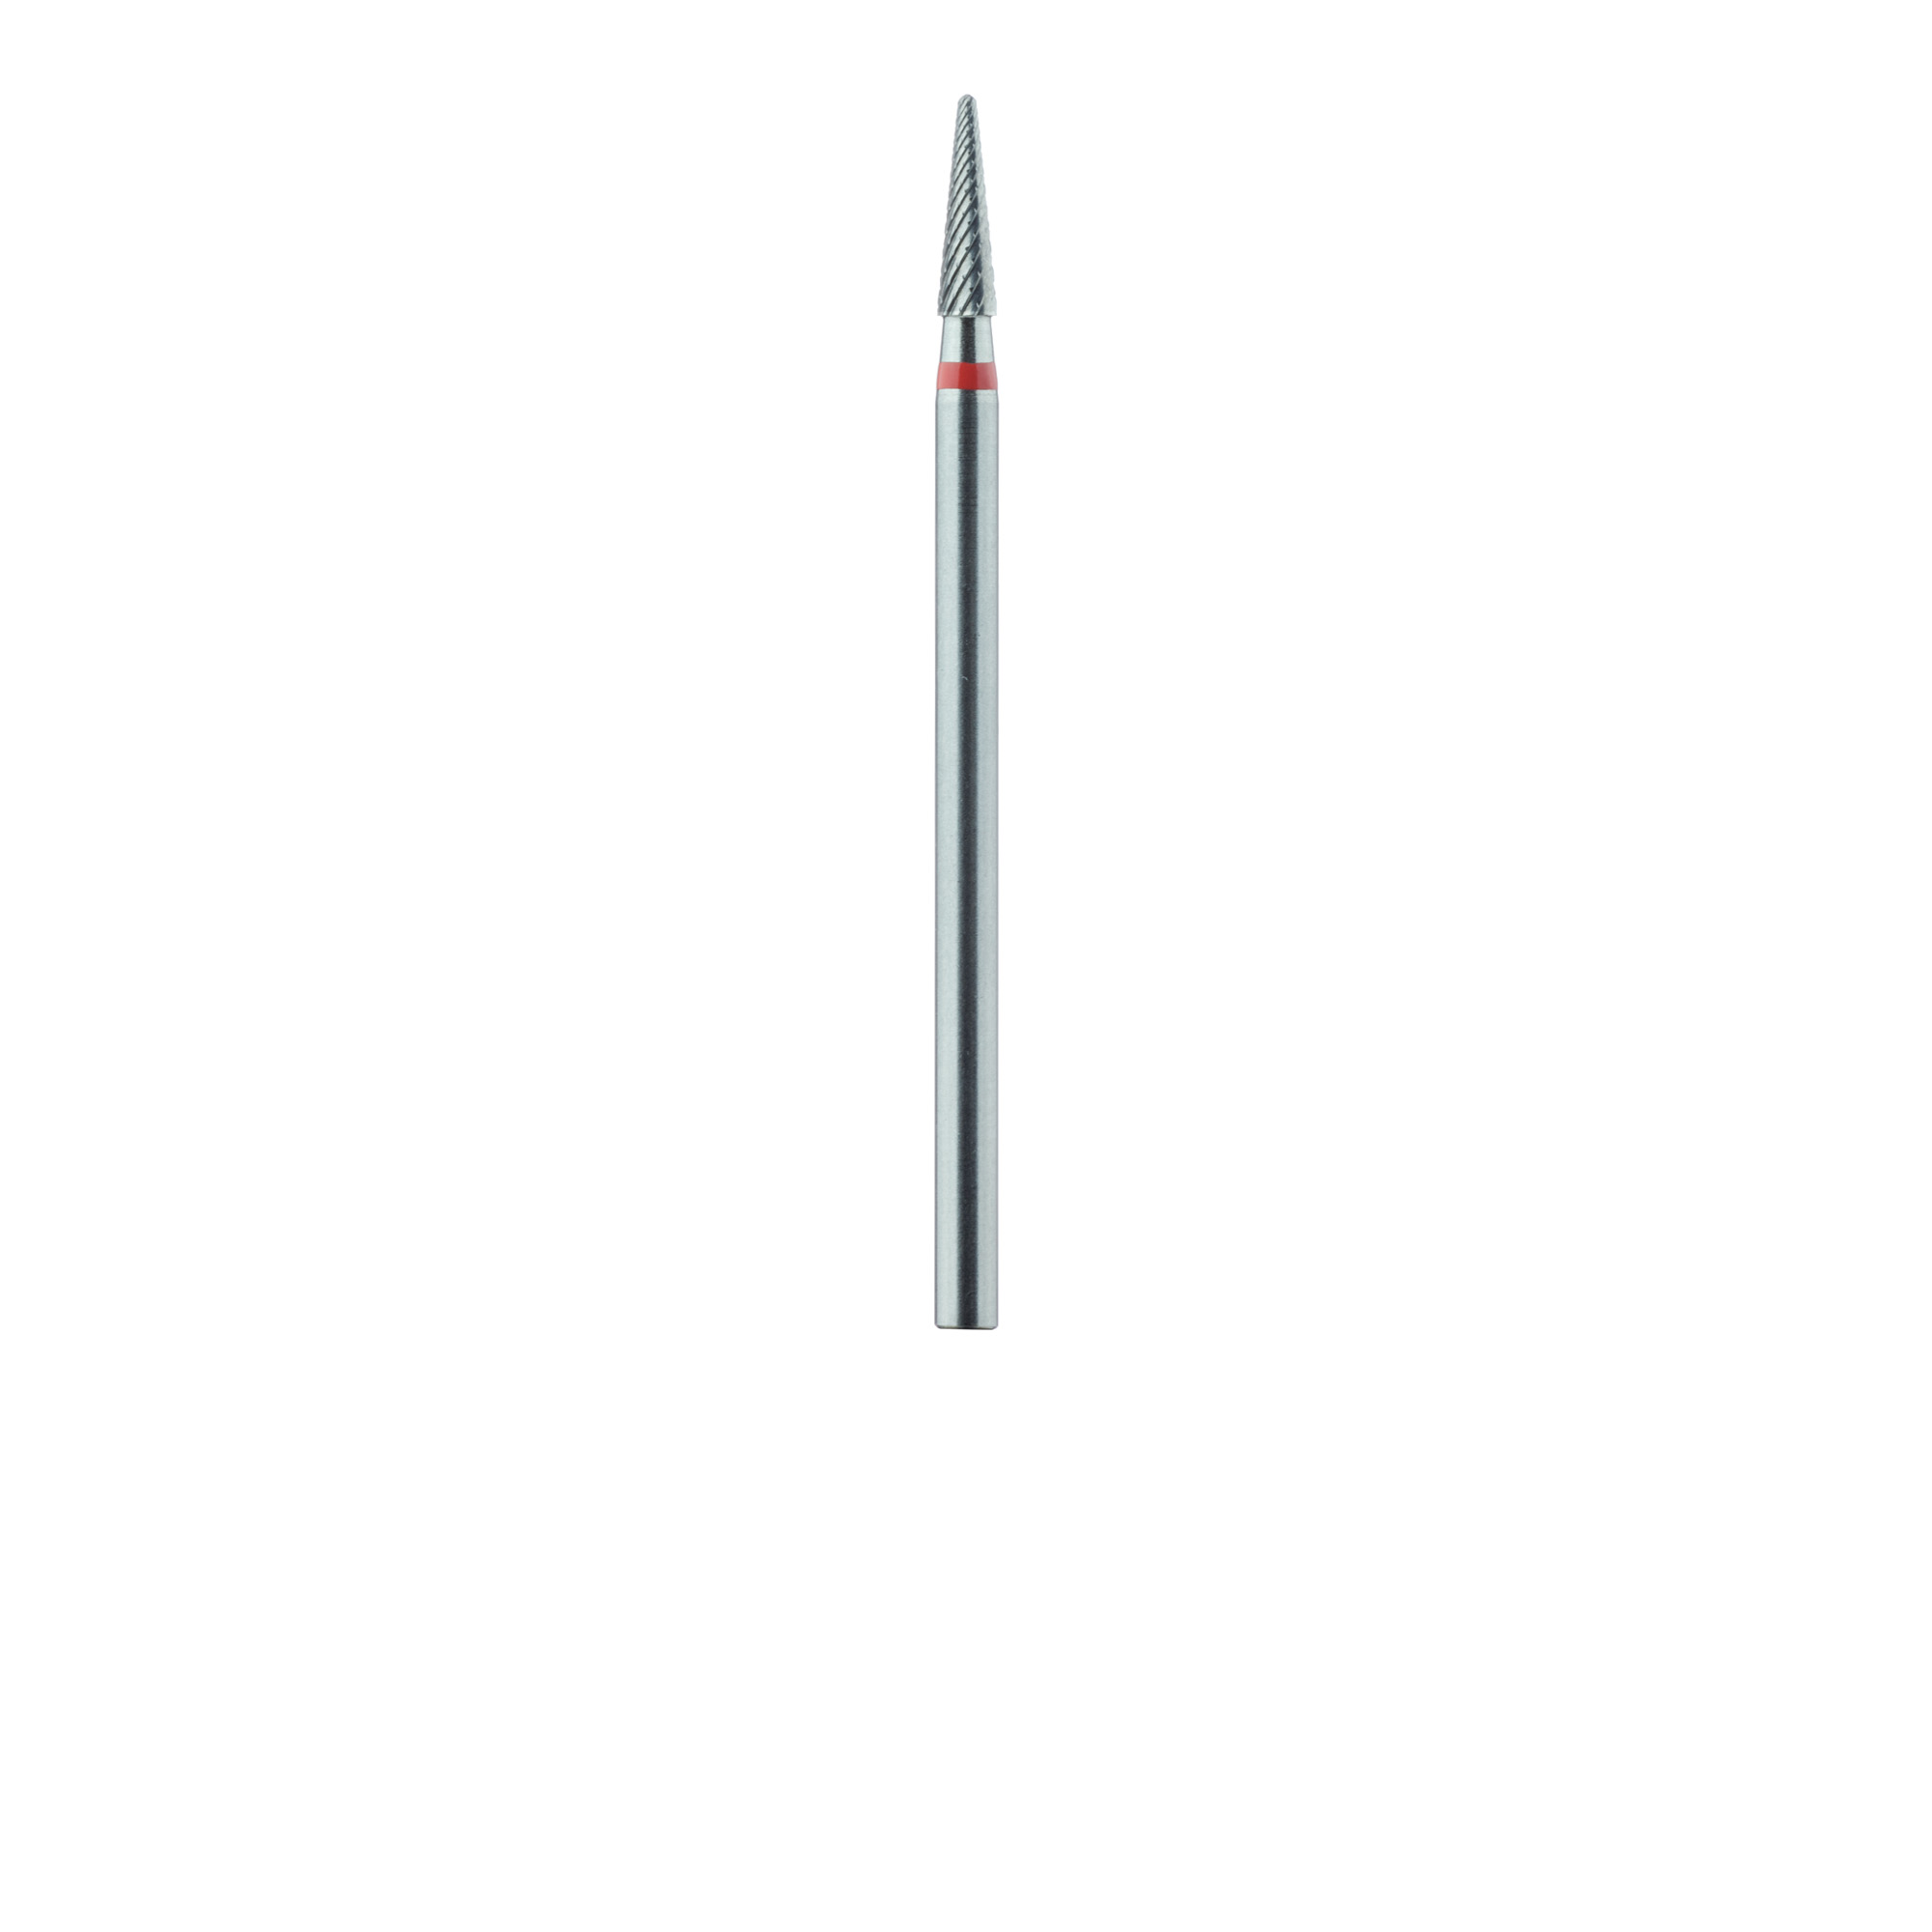 HM138FX-023-HP Laboratory Carbide Bur, Fine, Cross Cut, Round End Taper 2.3mm, HP